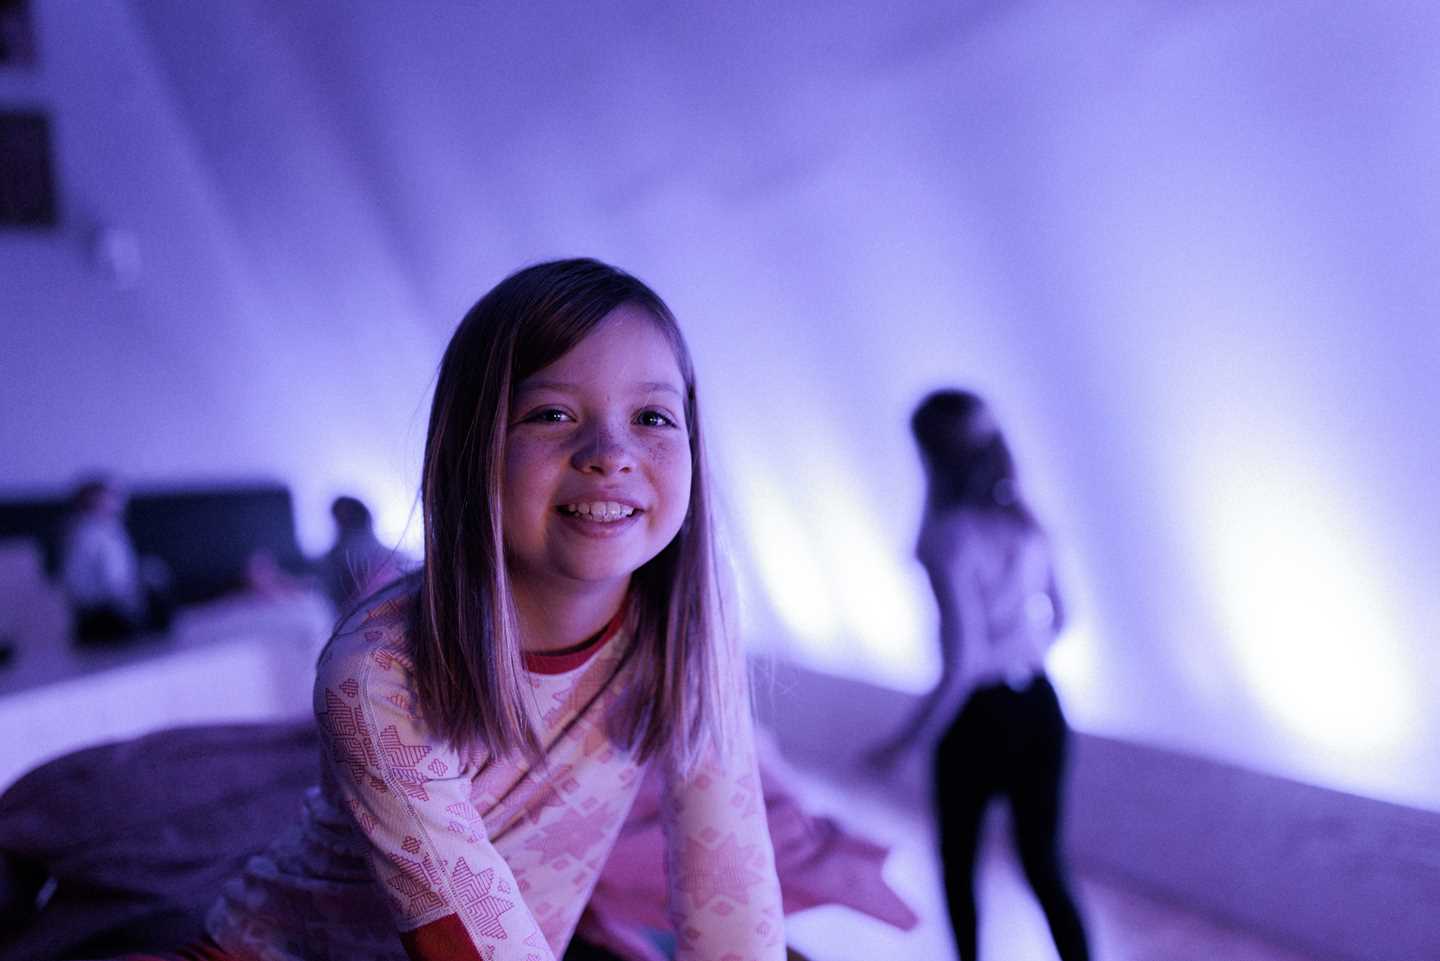 Barn leker i Kaoskammeret, i forgrunnen en jente som smiler og ser i kamera, omgitt av lilla lys og lekende barn i bakgrunnen ute av fokus